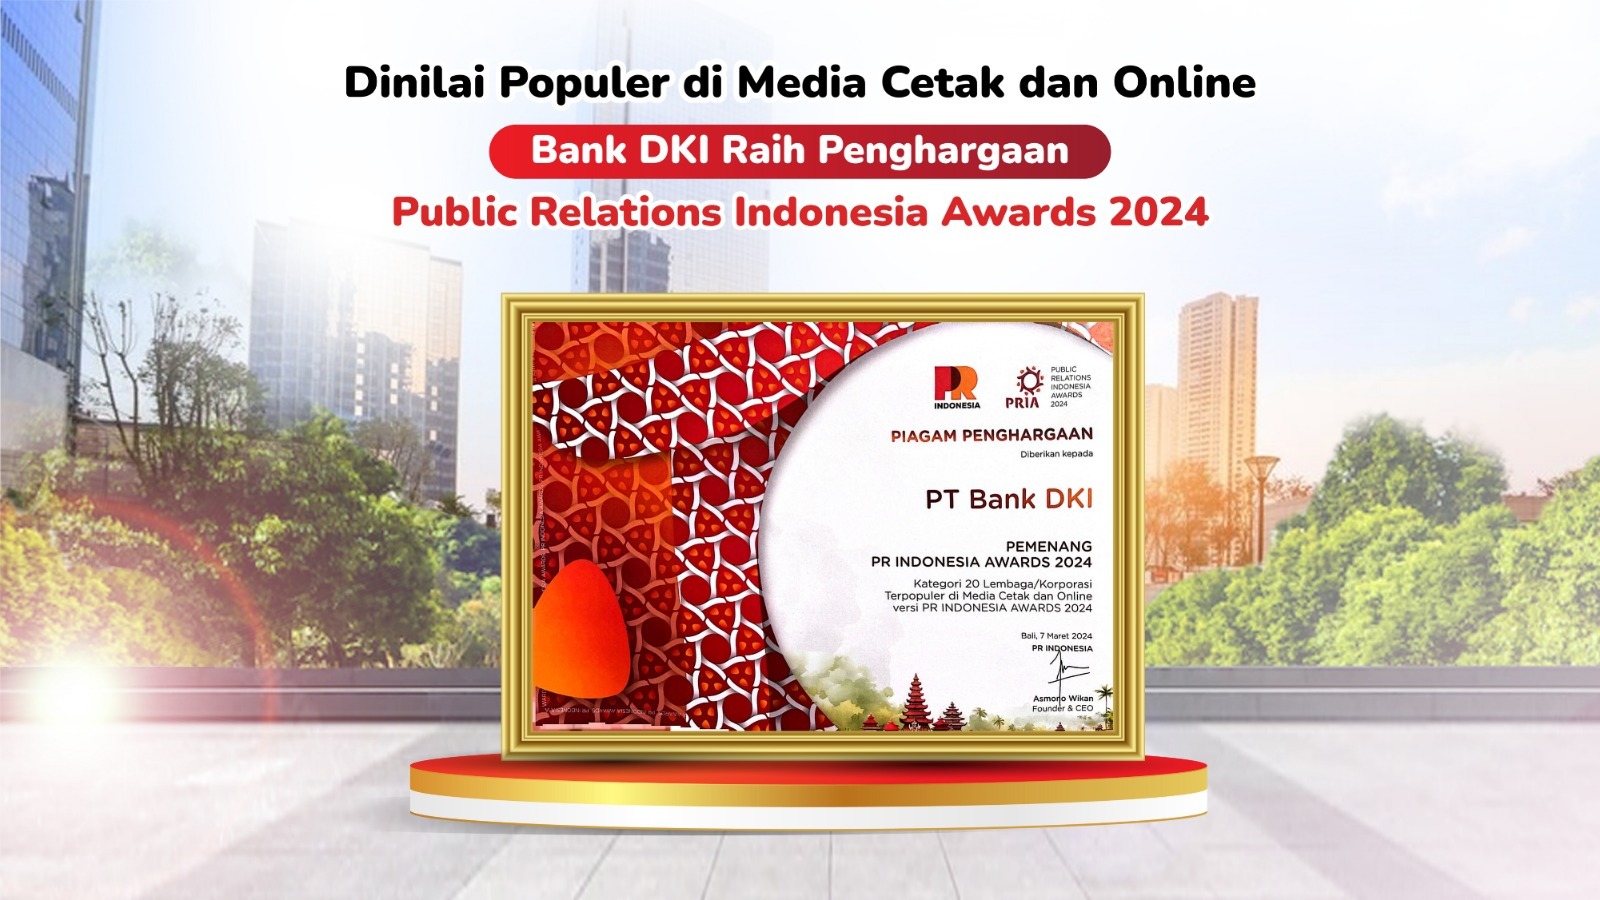 Dinilai Populer di Media Cetak dan Online, Bank DKI Raih Penghargaan Public Relations Indonesia Awards 2024